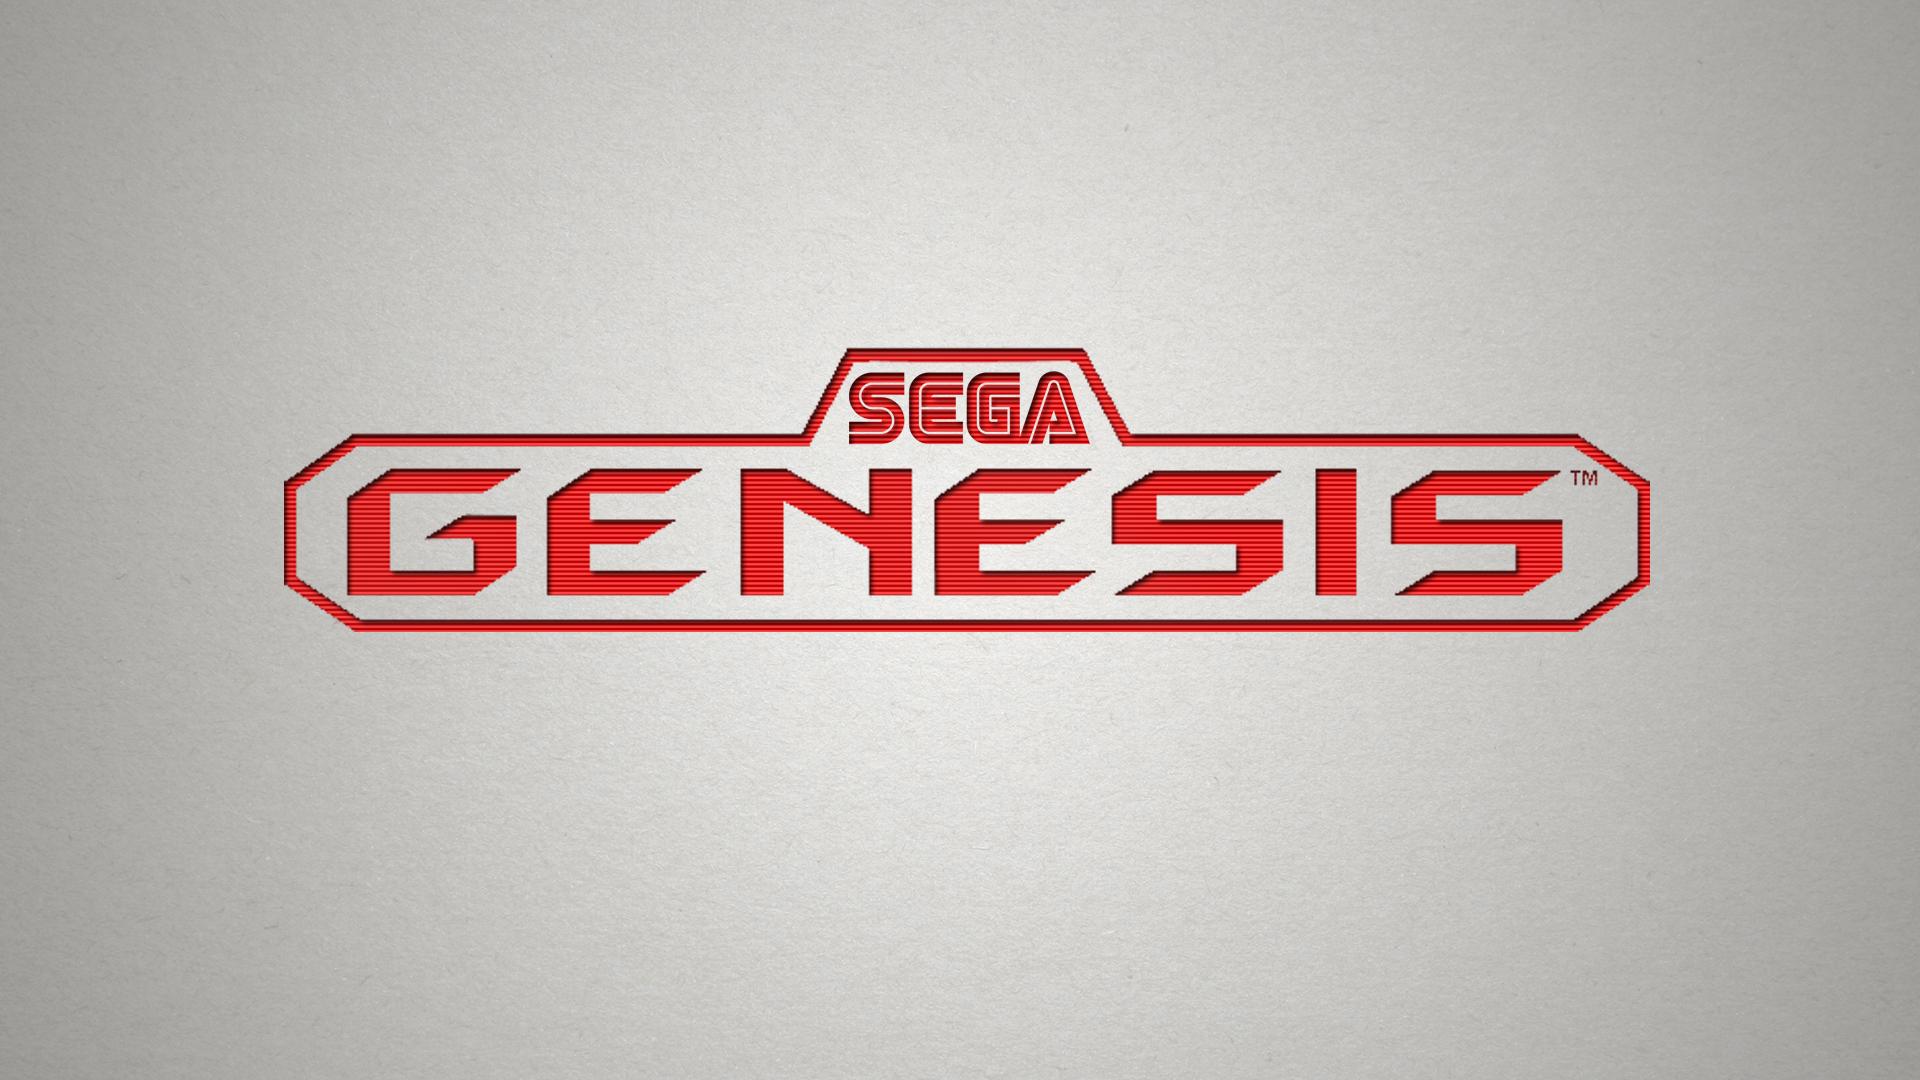 Sega Genesis Wallpaper. Sega Genesis Background